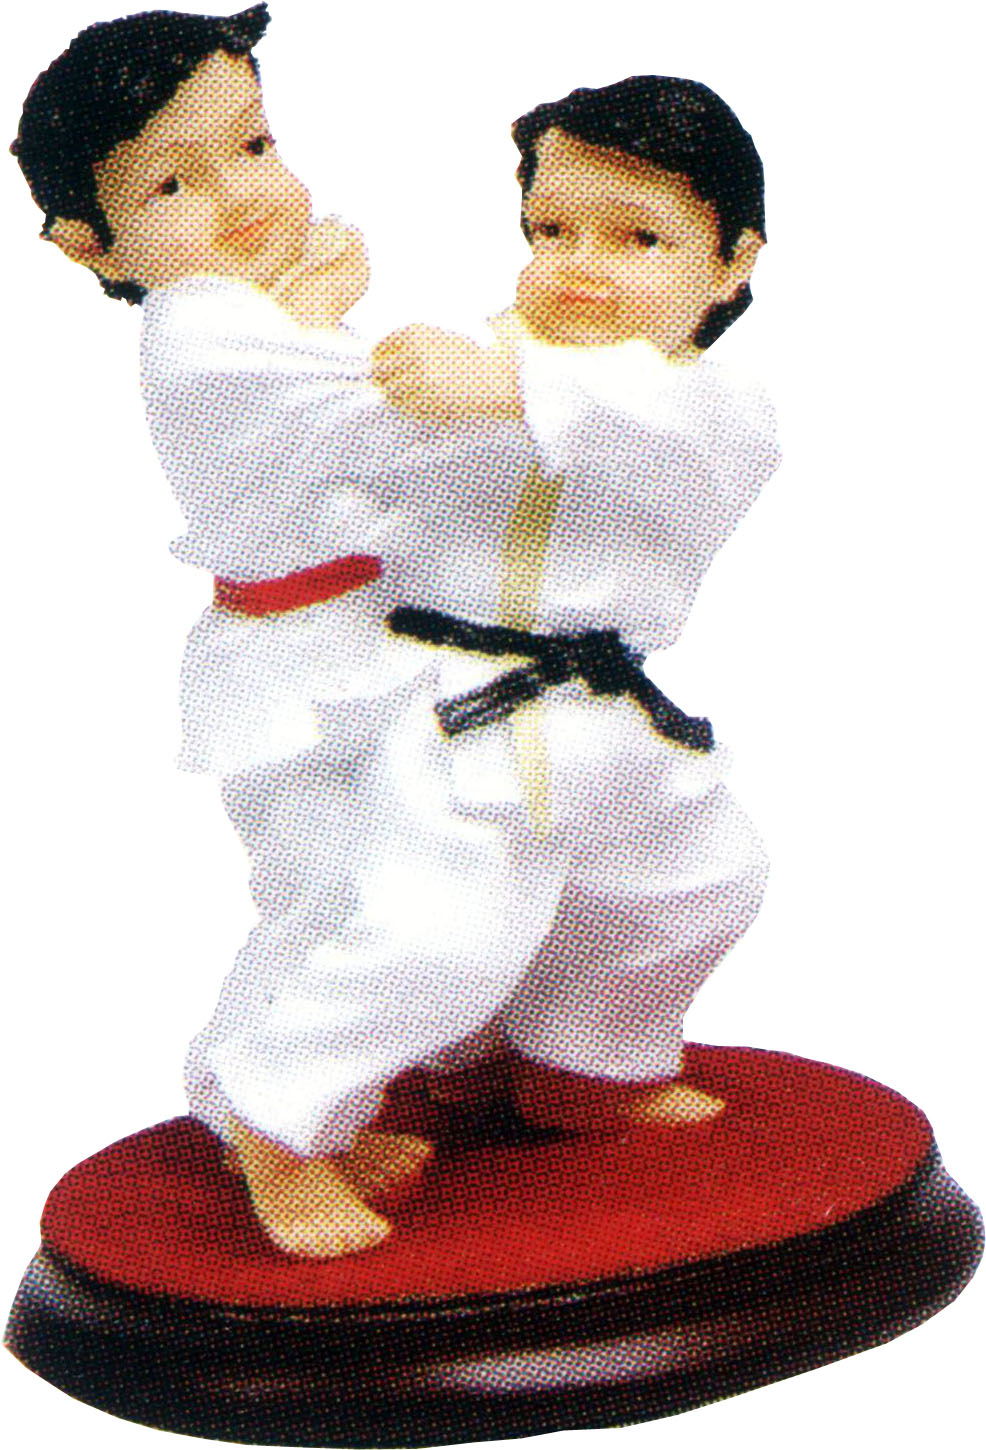 Judo Figur  (H972)  9 x 11.5 x 14cm